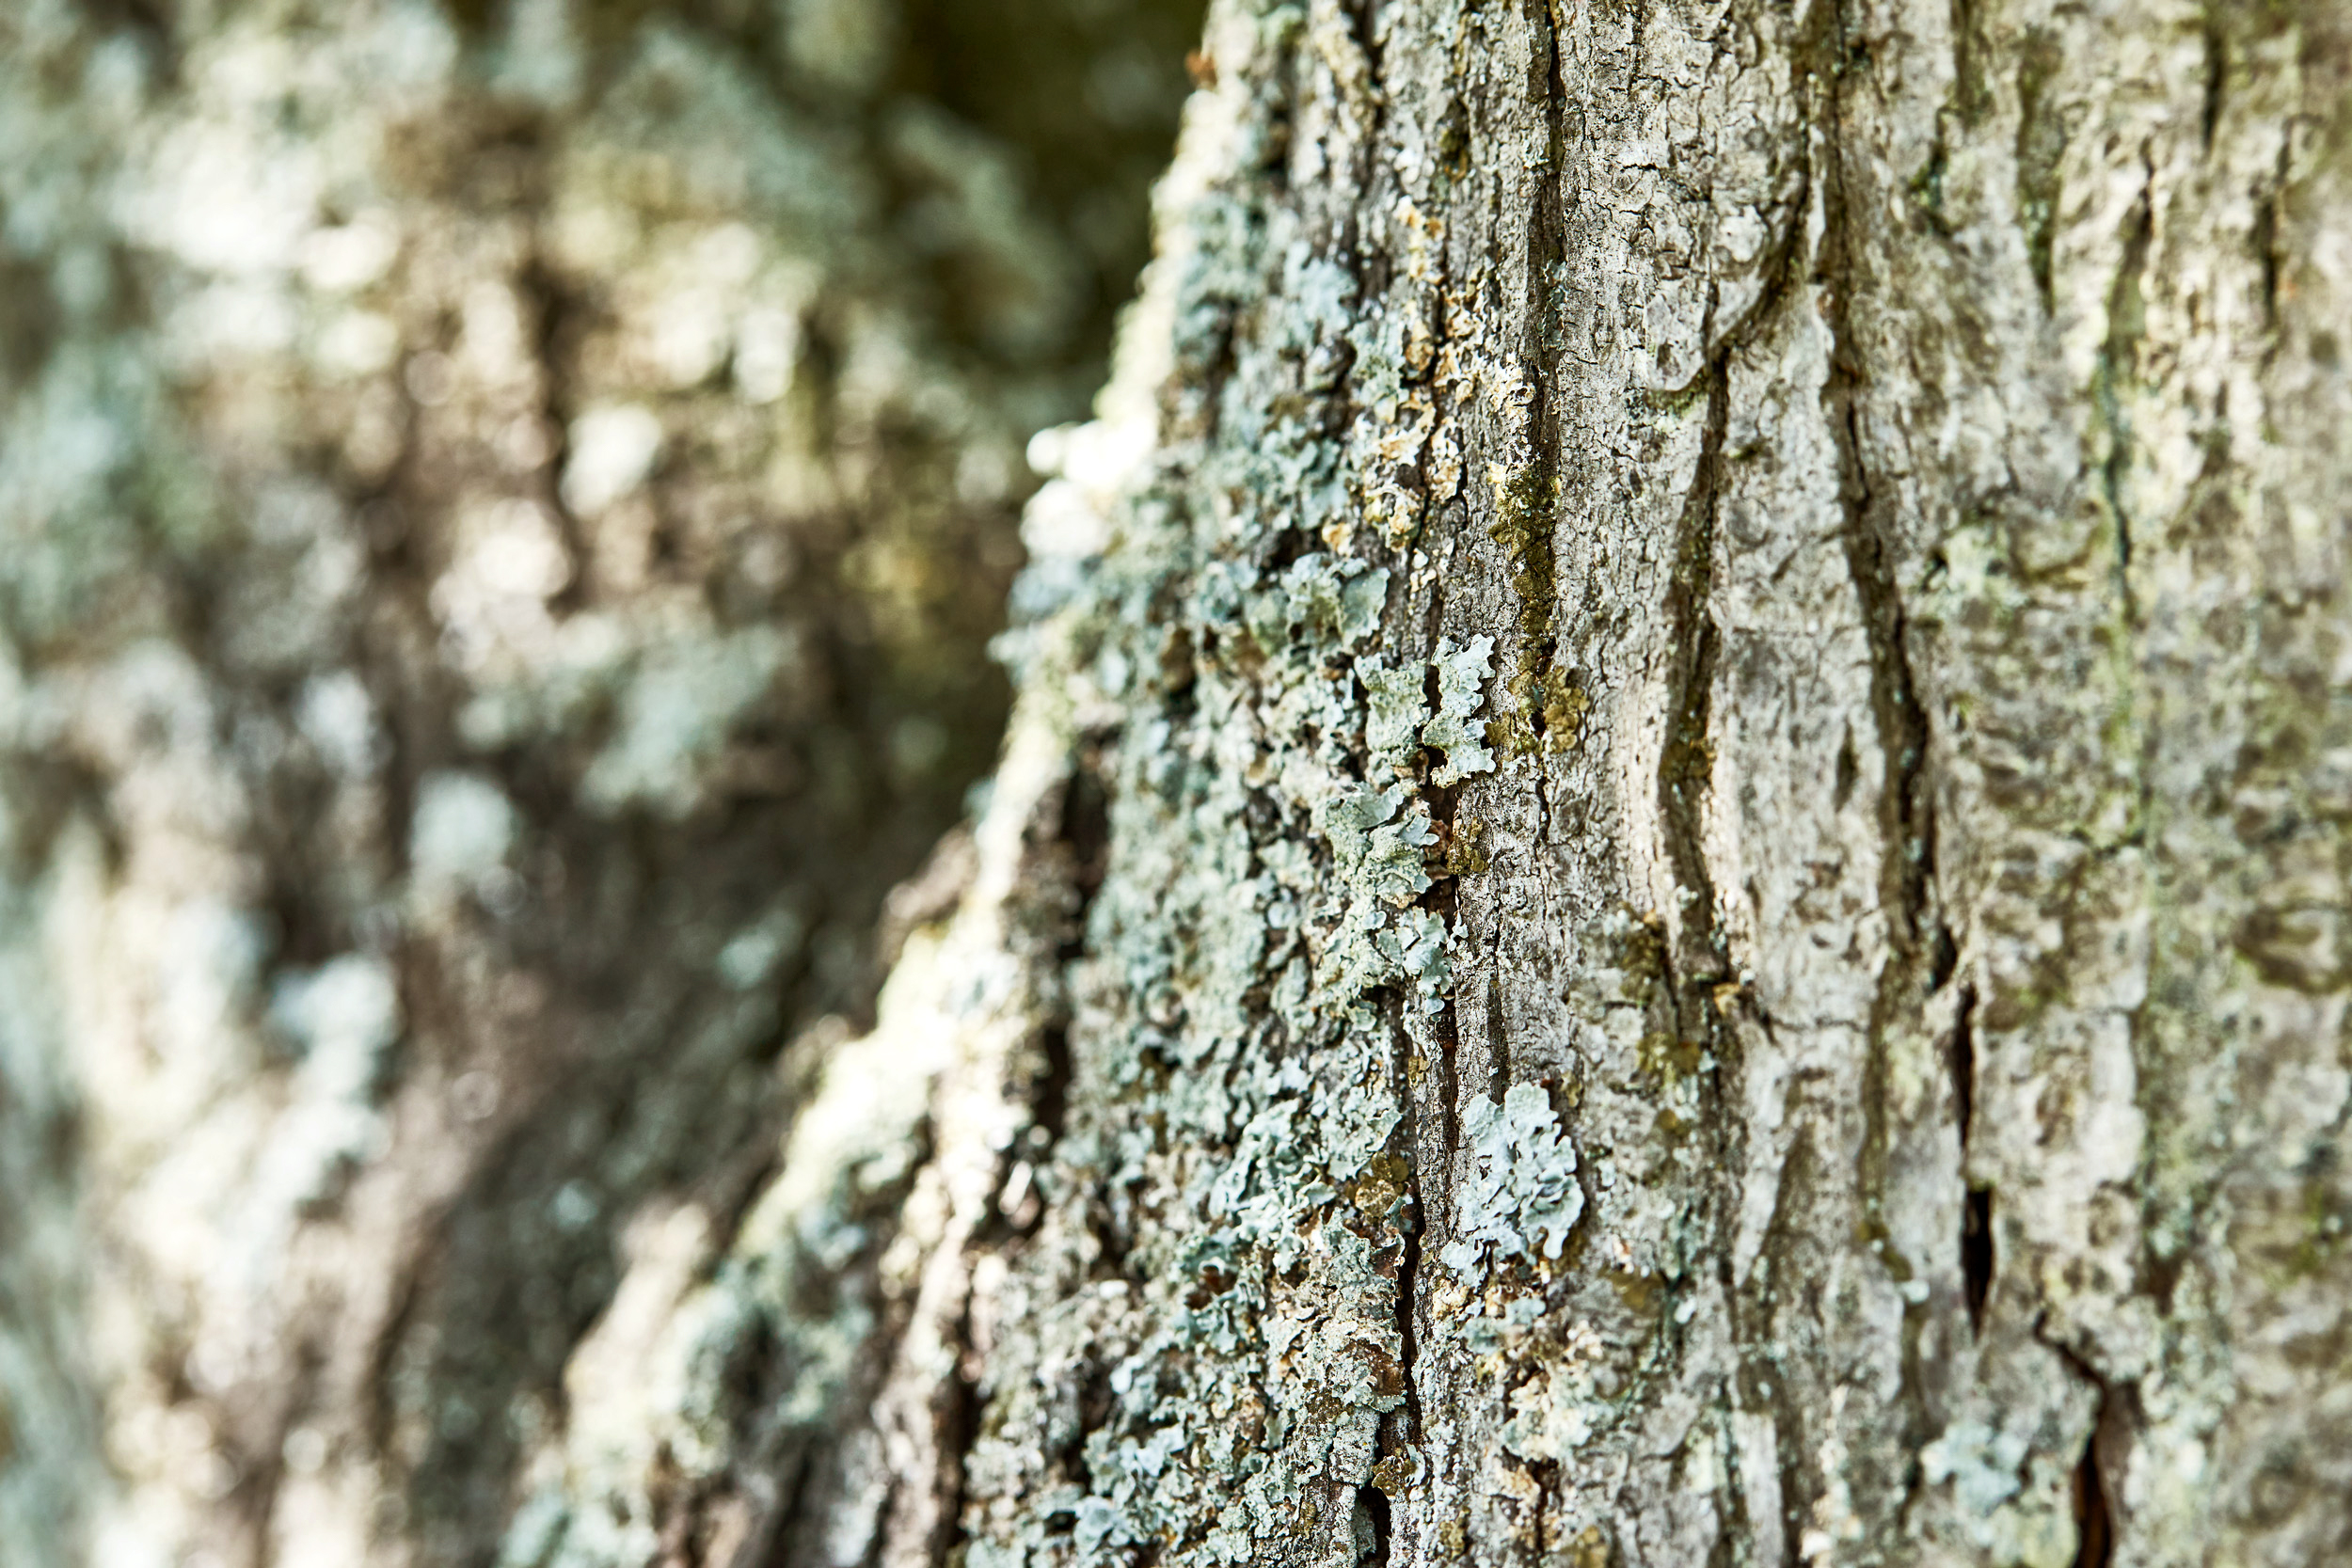 Primo piano della corteccia di un albero ricoperta da un leggero strato di licheni